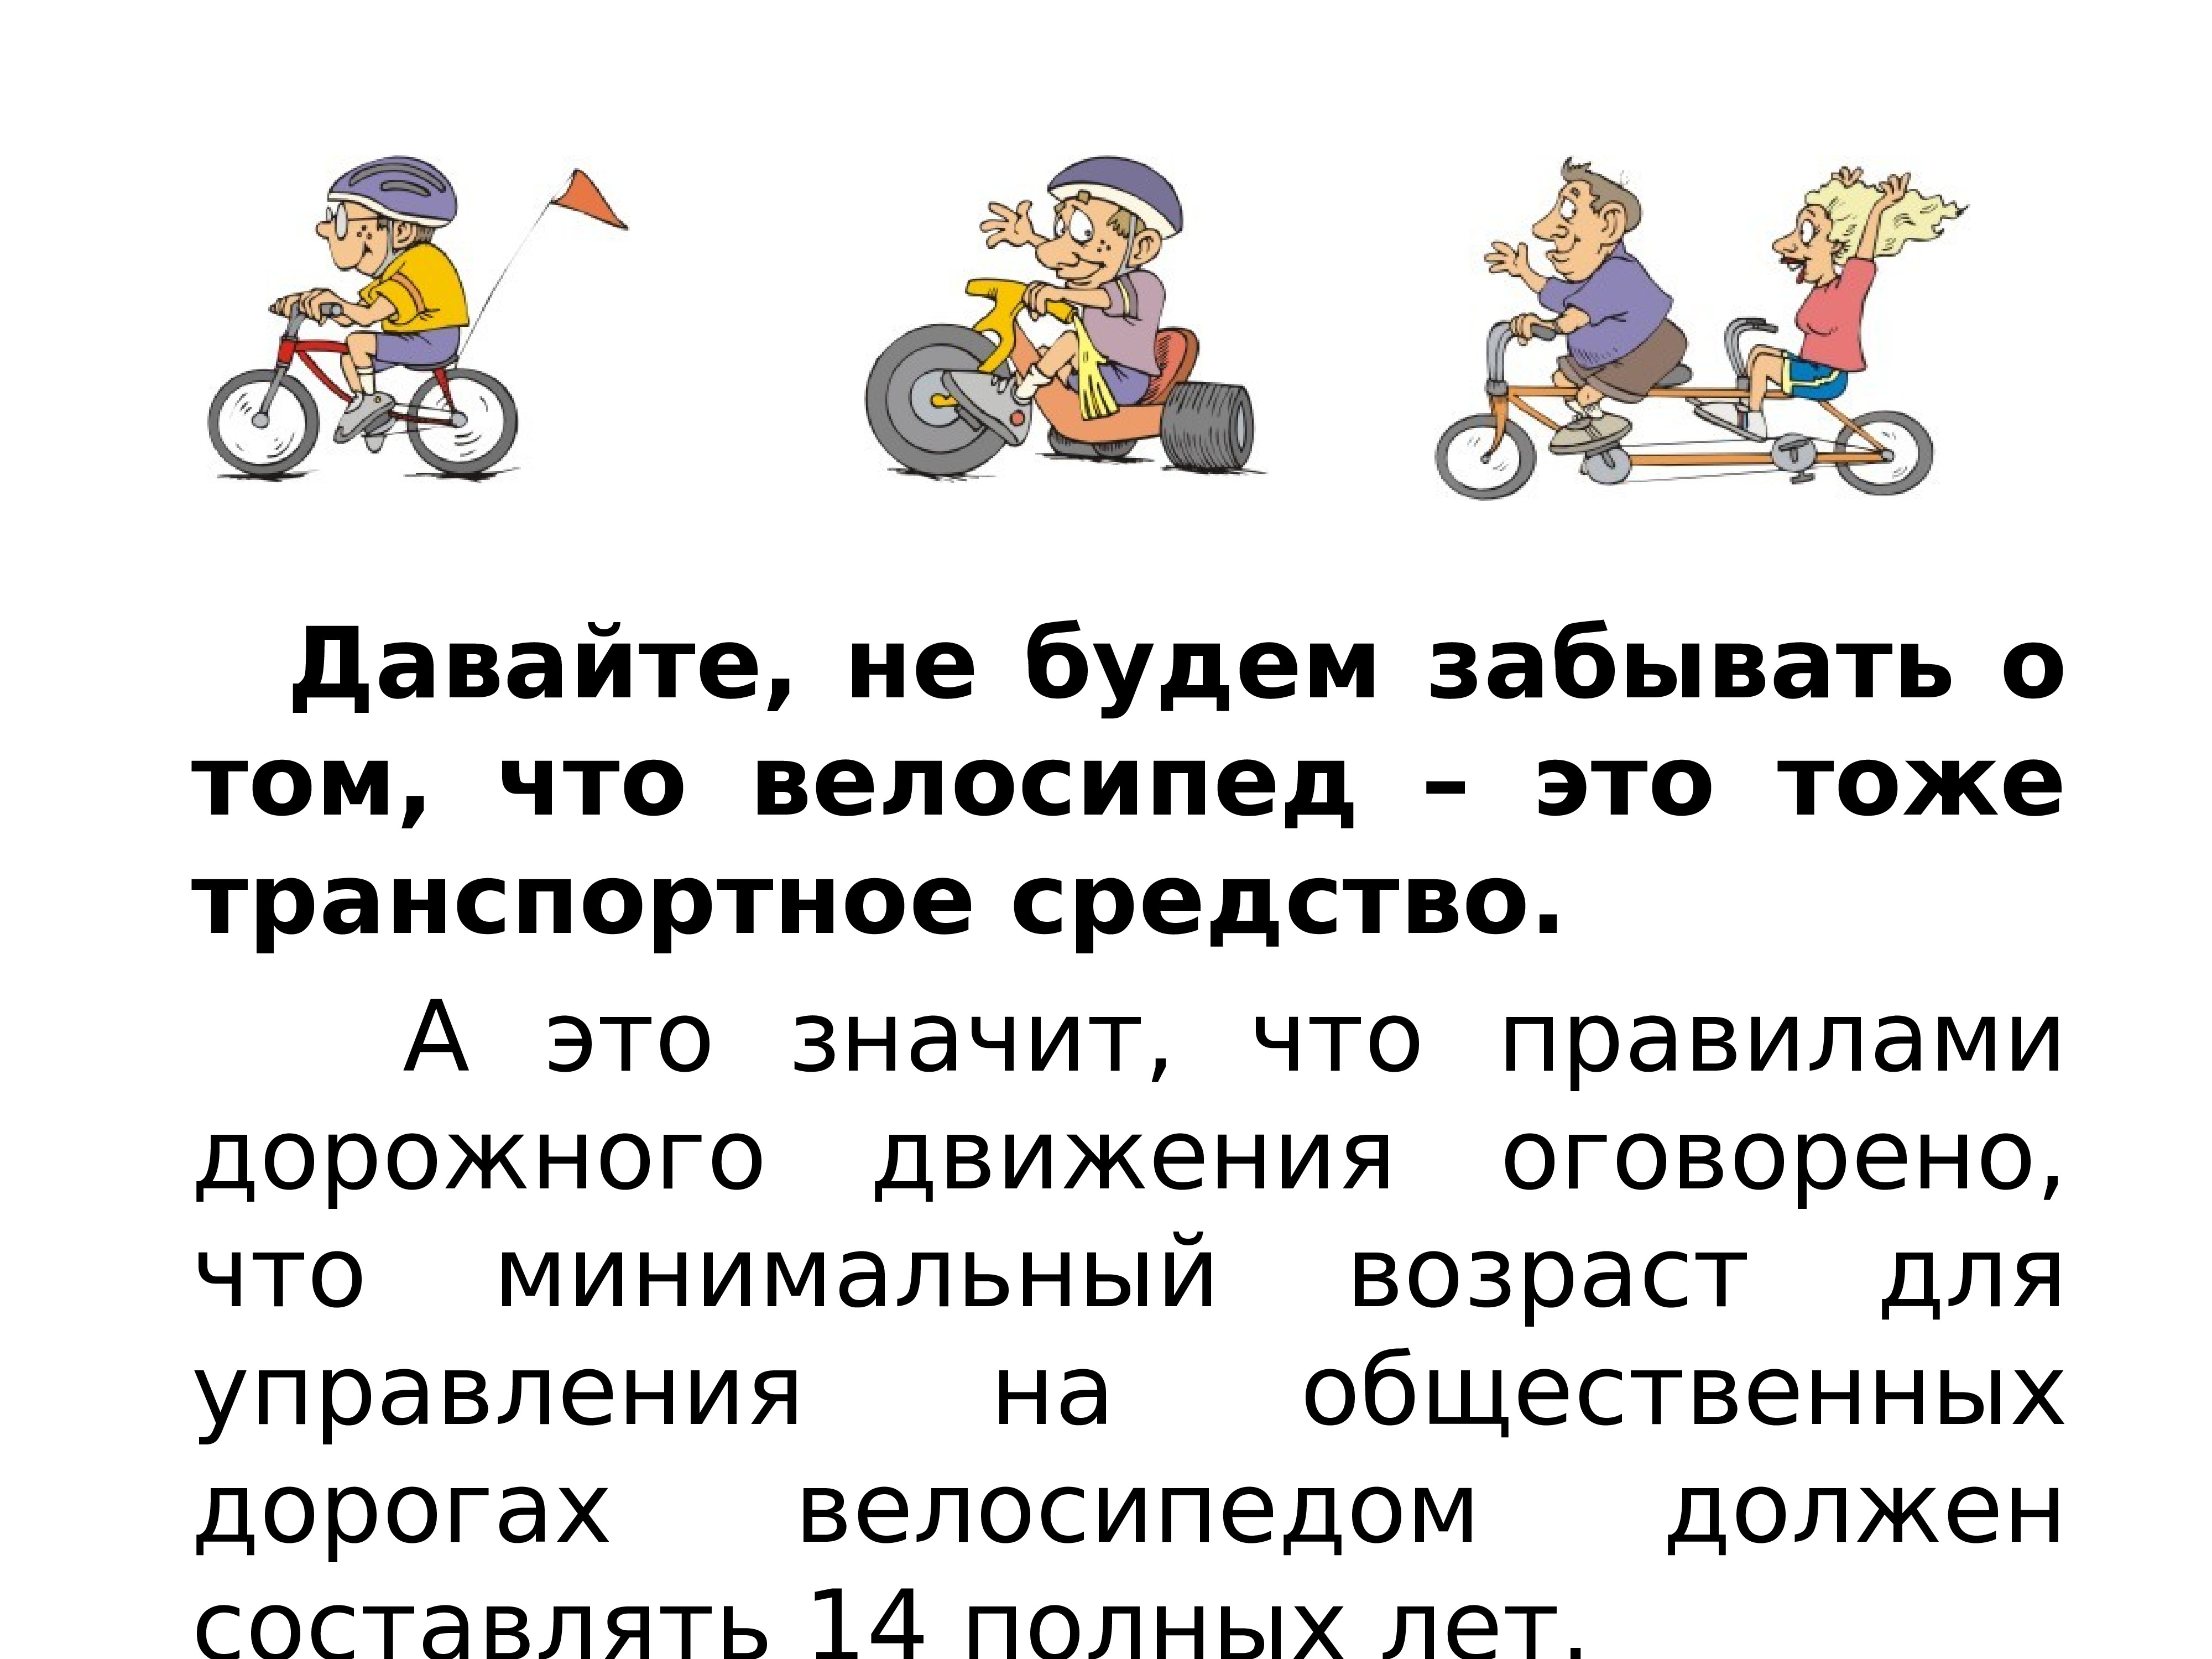 7 правил велосипедиста. Правила для велосипедистов. ПДД для велосипедистов. ПДД велосипед. Презентация ПДД велосипед.